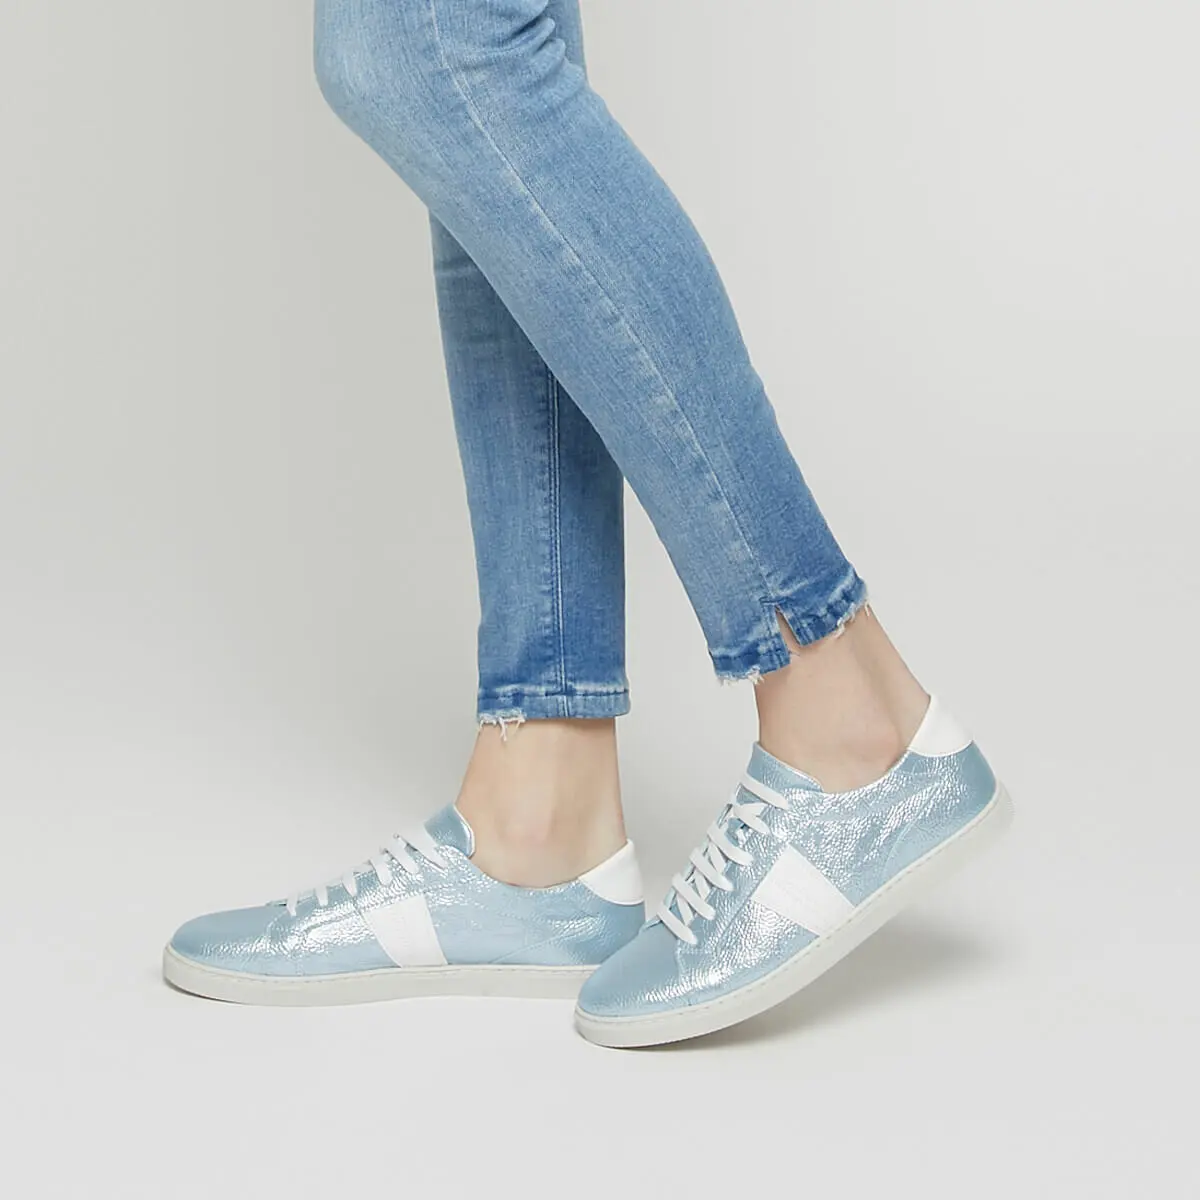 FLO zapatillas de deporte para mujer azul rosa claro deporte Casual moda cómodos zapatos dama calzado de señora kléas de los pies - AliExpress